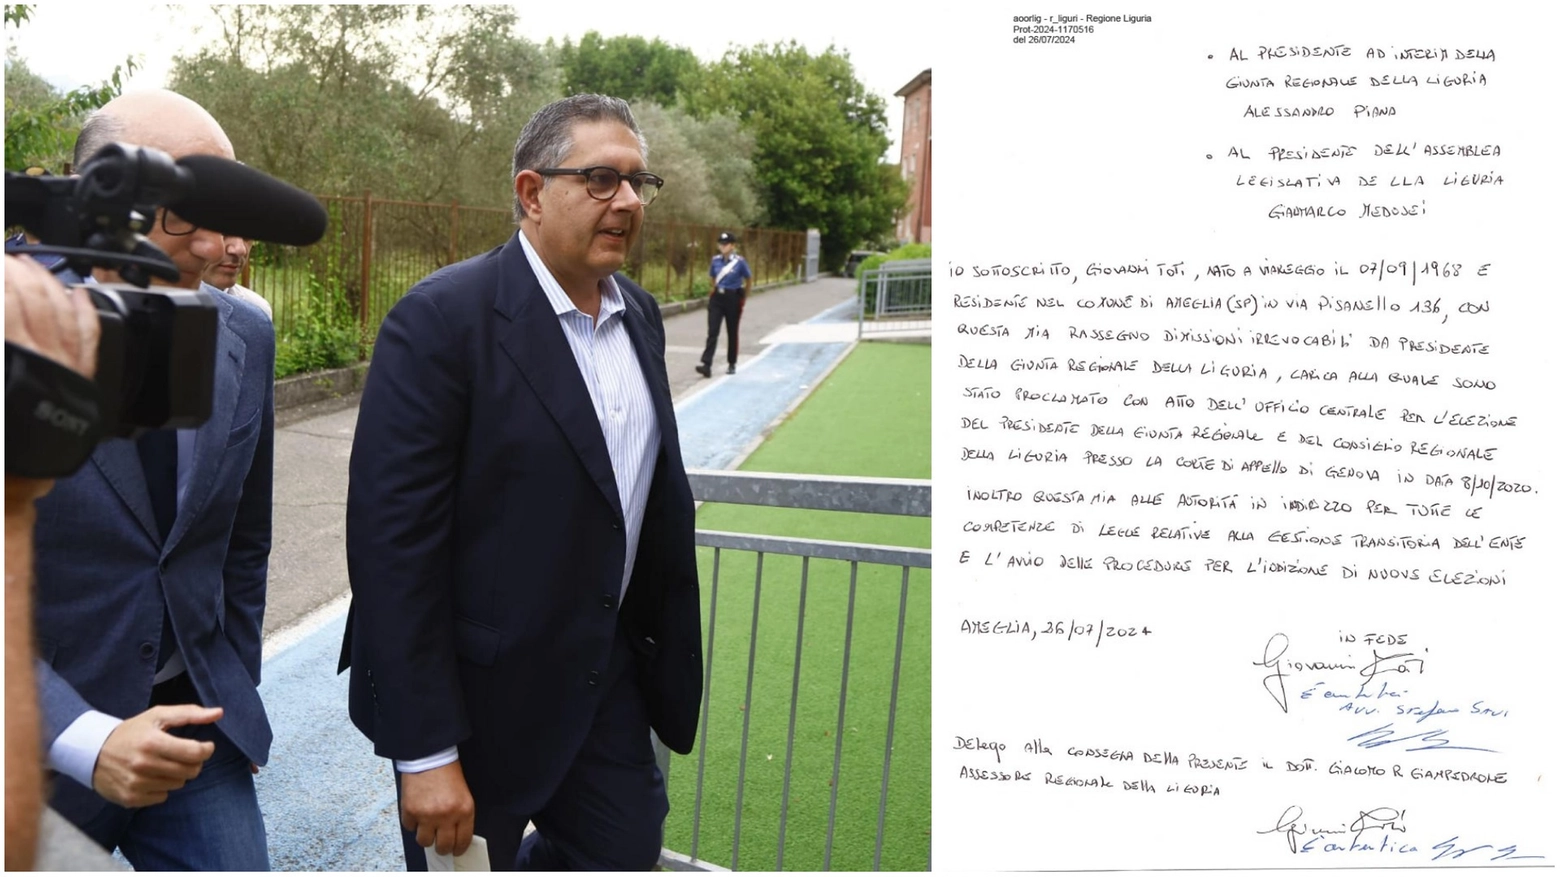 L’avvocato dell’ex governatore ligure ha consegnato la missiva all’assessore Giampredrone, che l’ha protocollata. Al voto entro la fine di ottobre